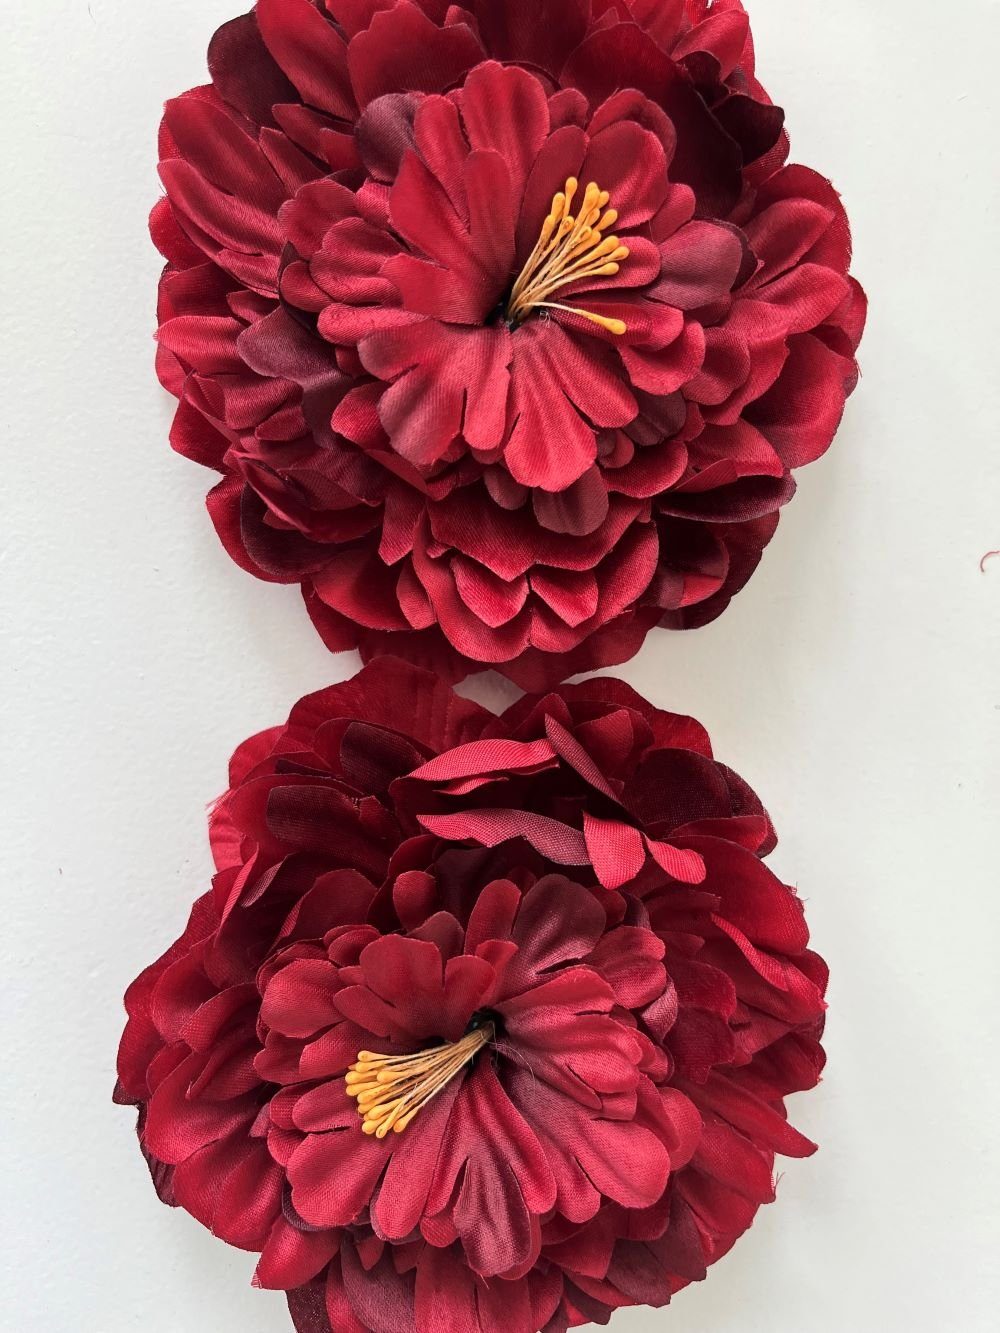 Kunstblume *Seiden-Blüte Pfingstrose (Paeonia), echt künstlich, zur Dekoration* täuschend 2474U, Metall-Clip Pfingstrose naturgetreu, auf